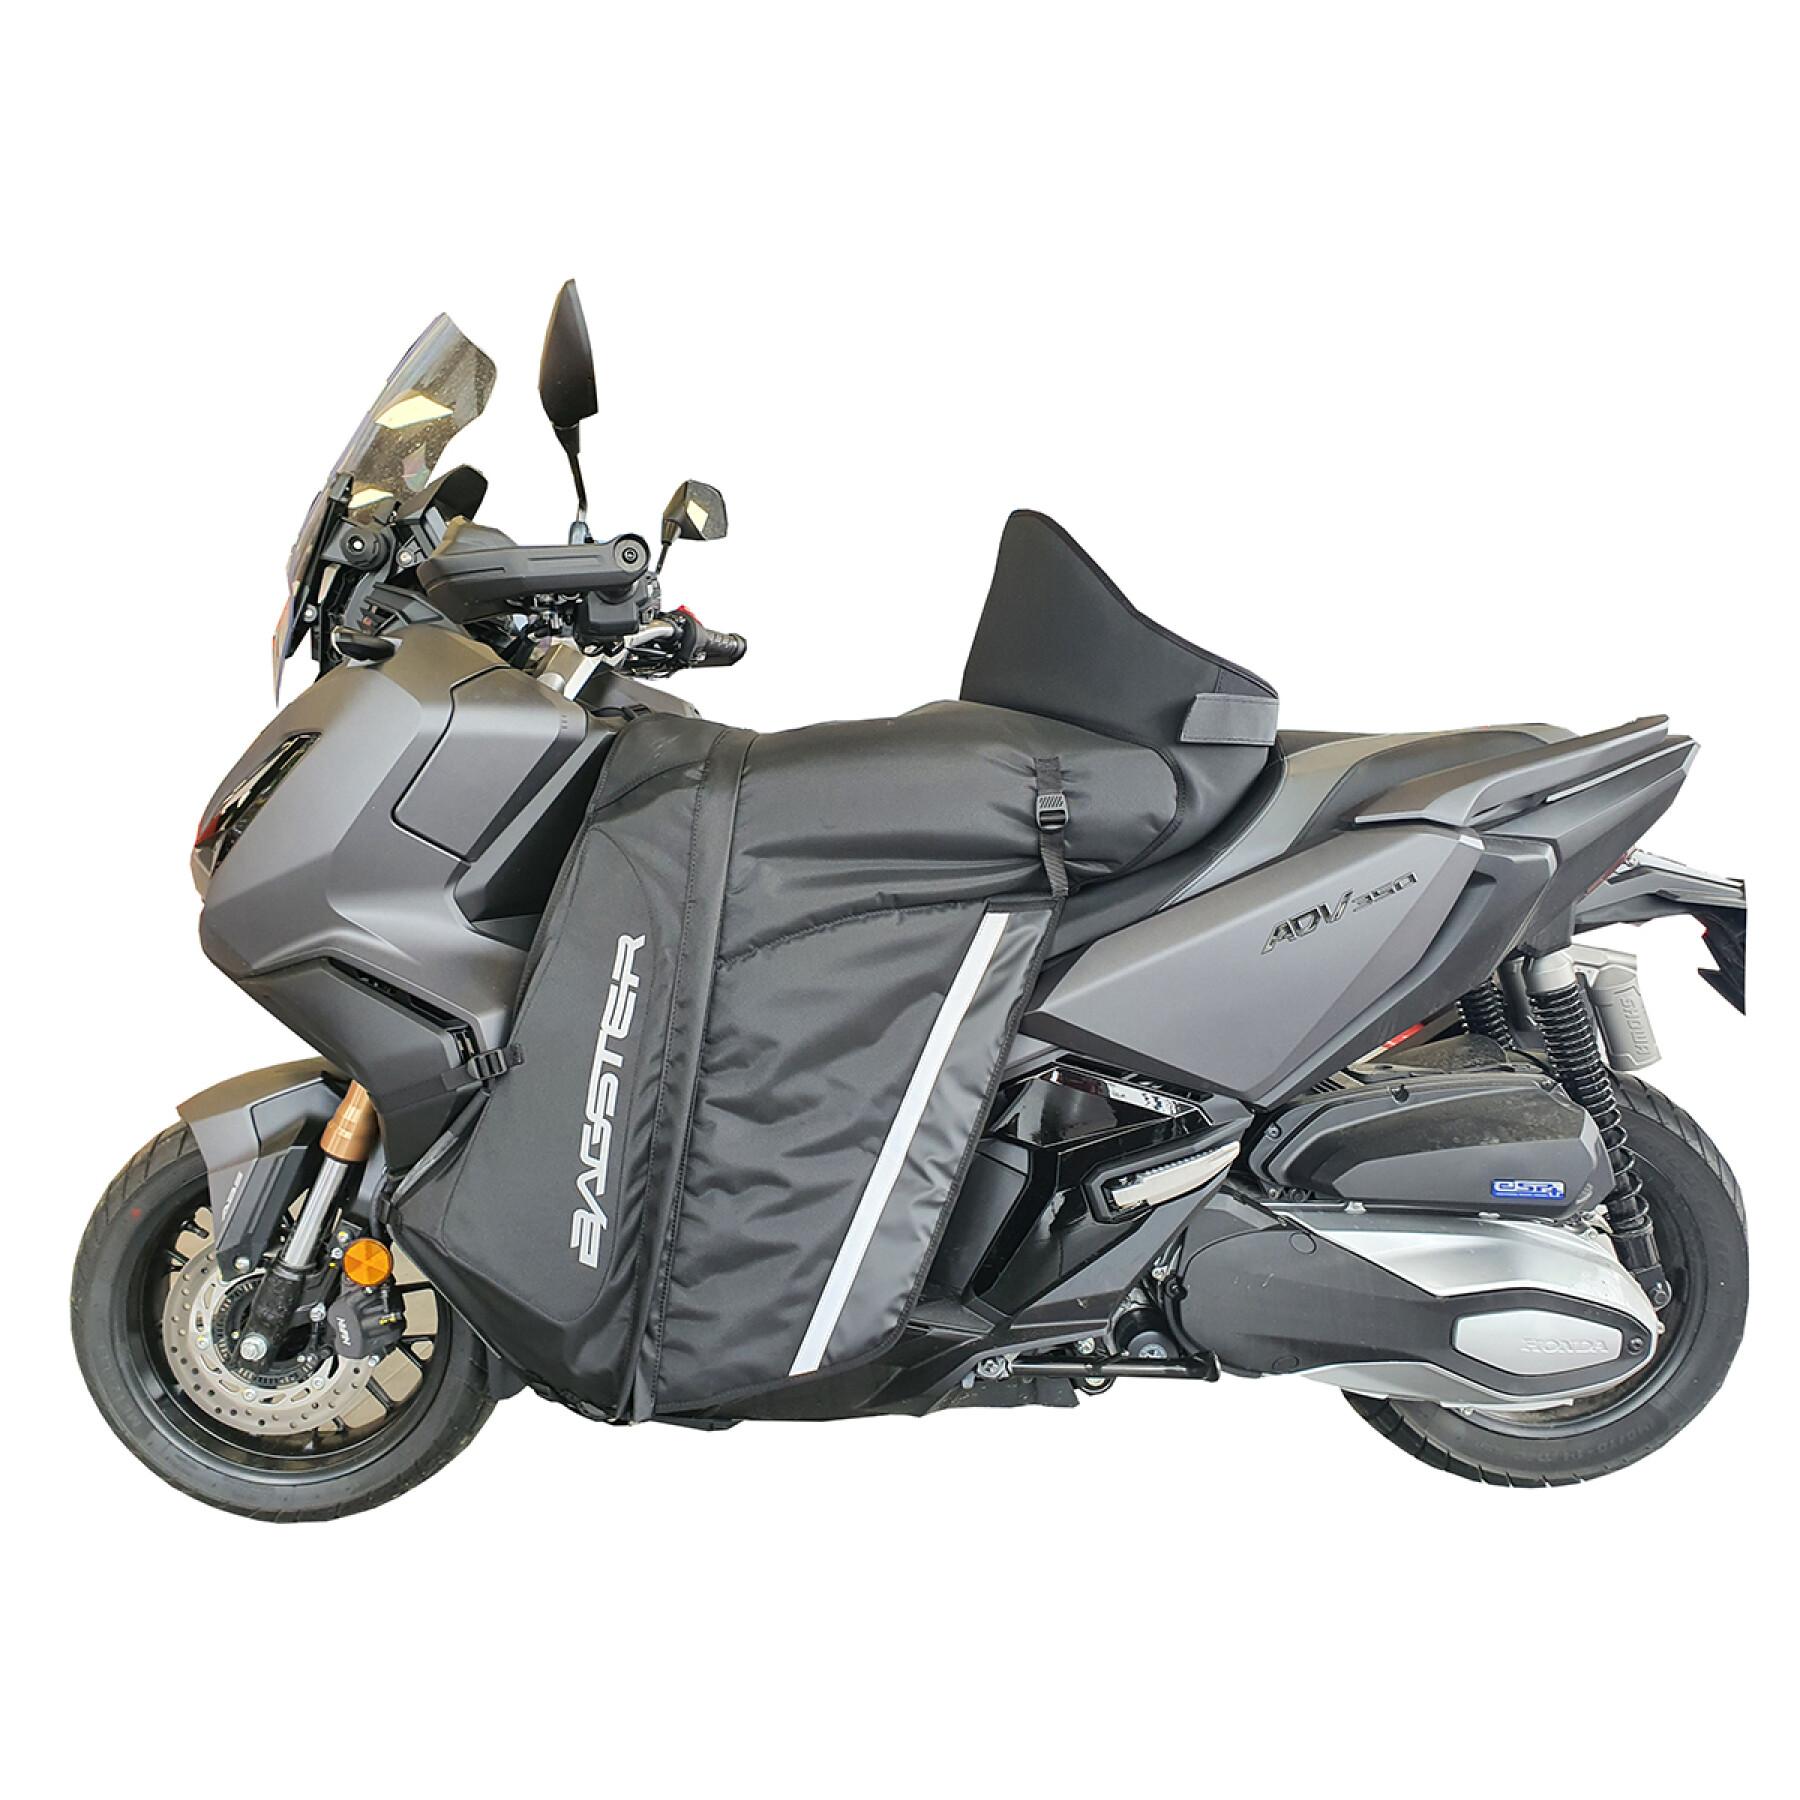 Accesorios para la moto Honda ADV 350